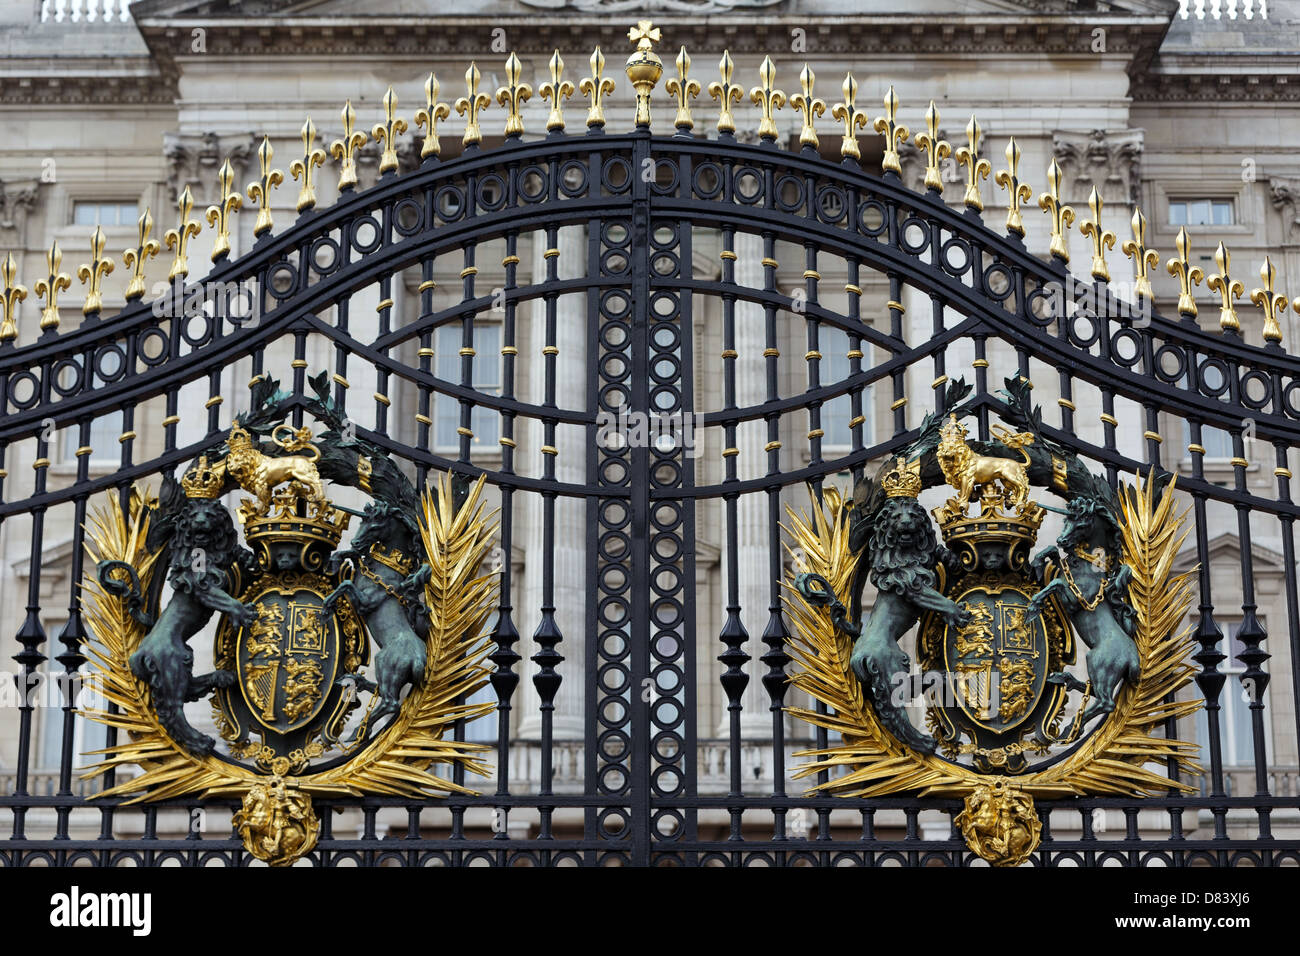 Buckingham Palace main gate, London, United Kingdom Stock Photo